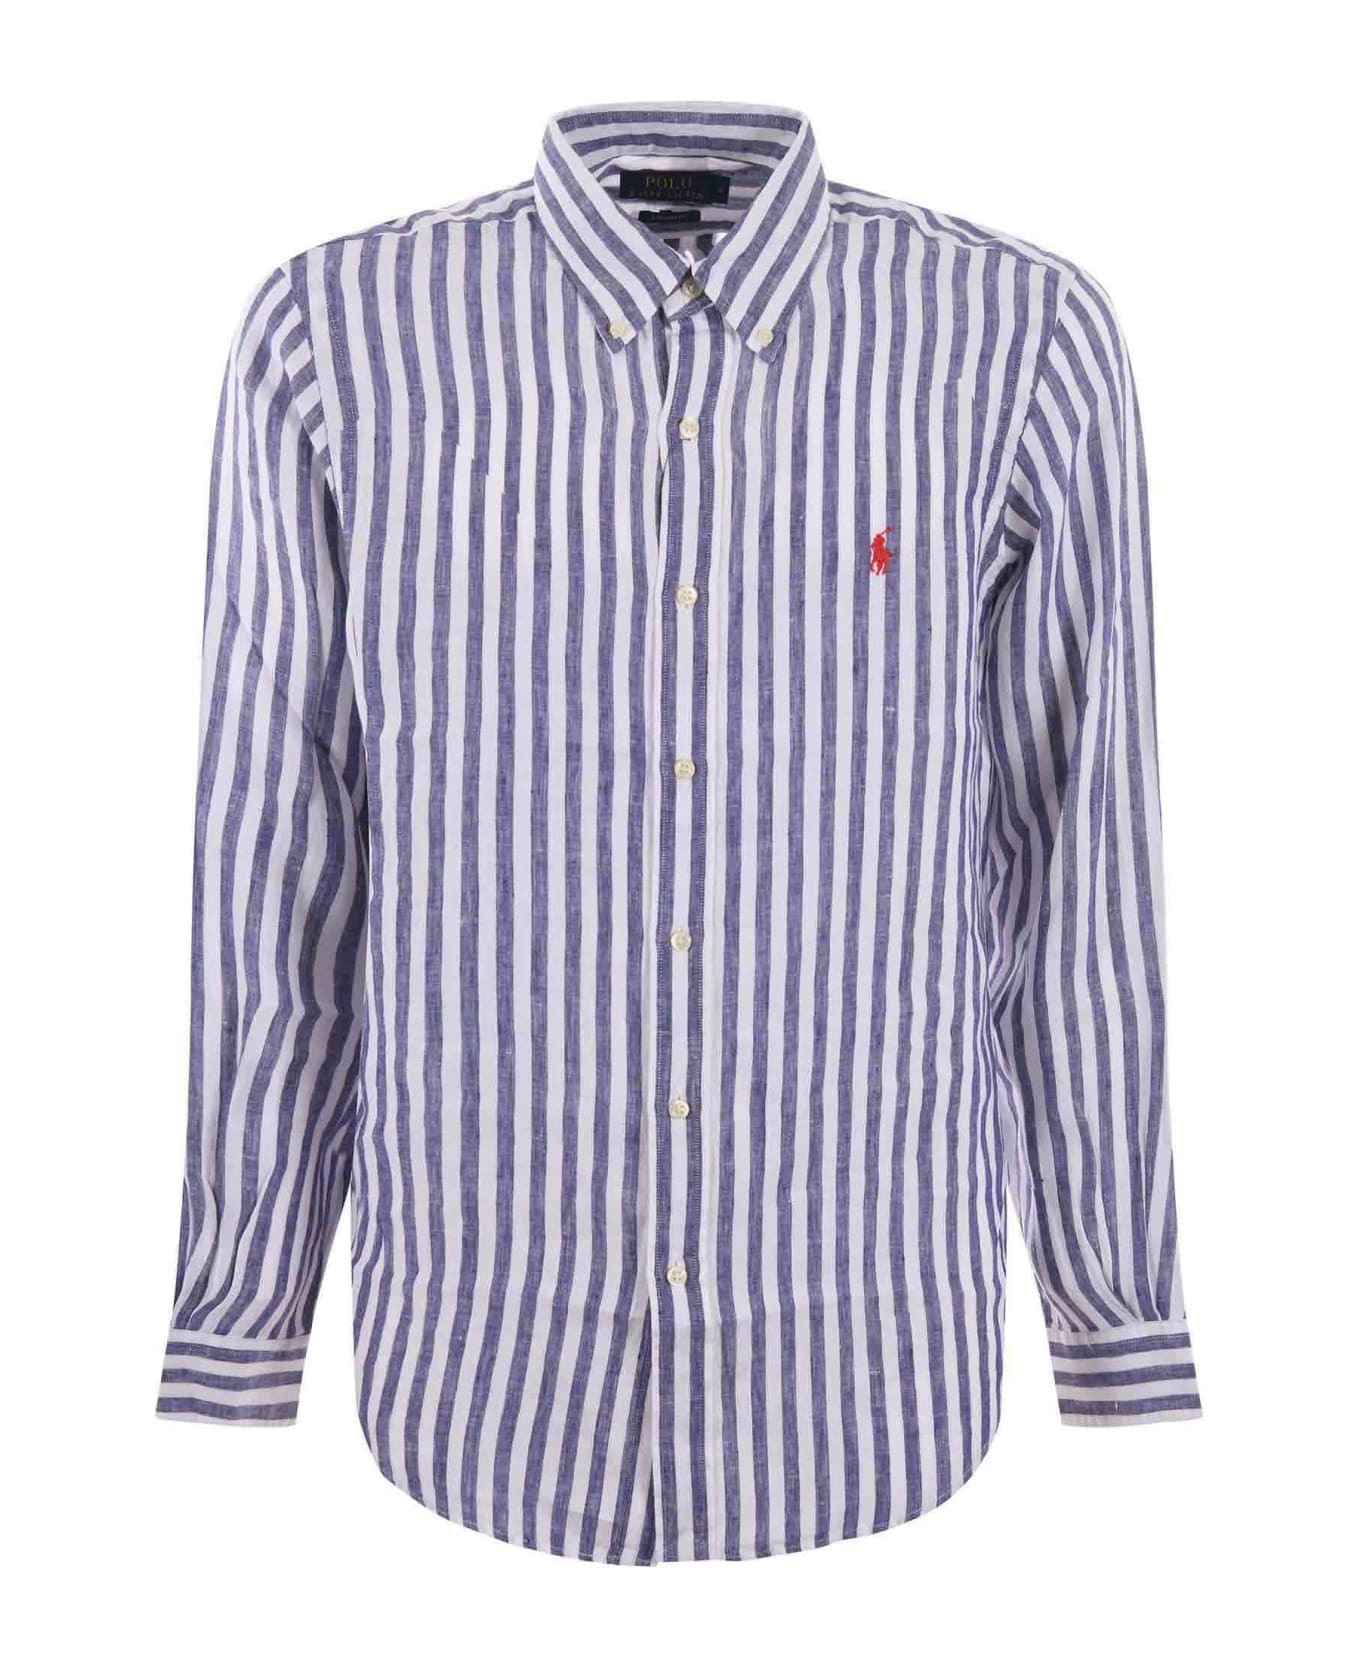 Polo Ralph Lauren Shirt - Bianco/blu シャツ